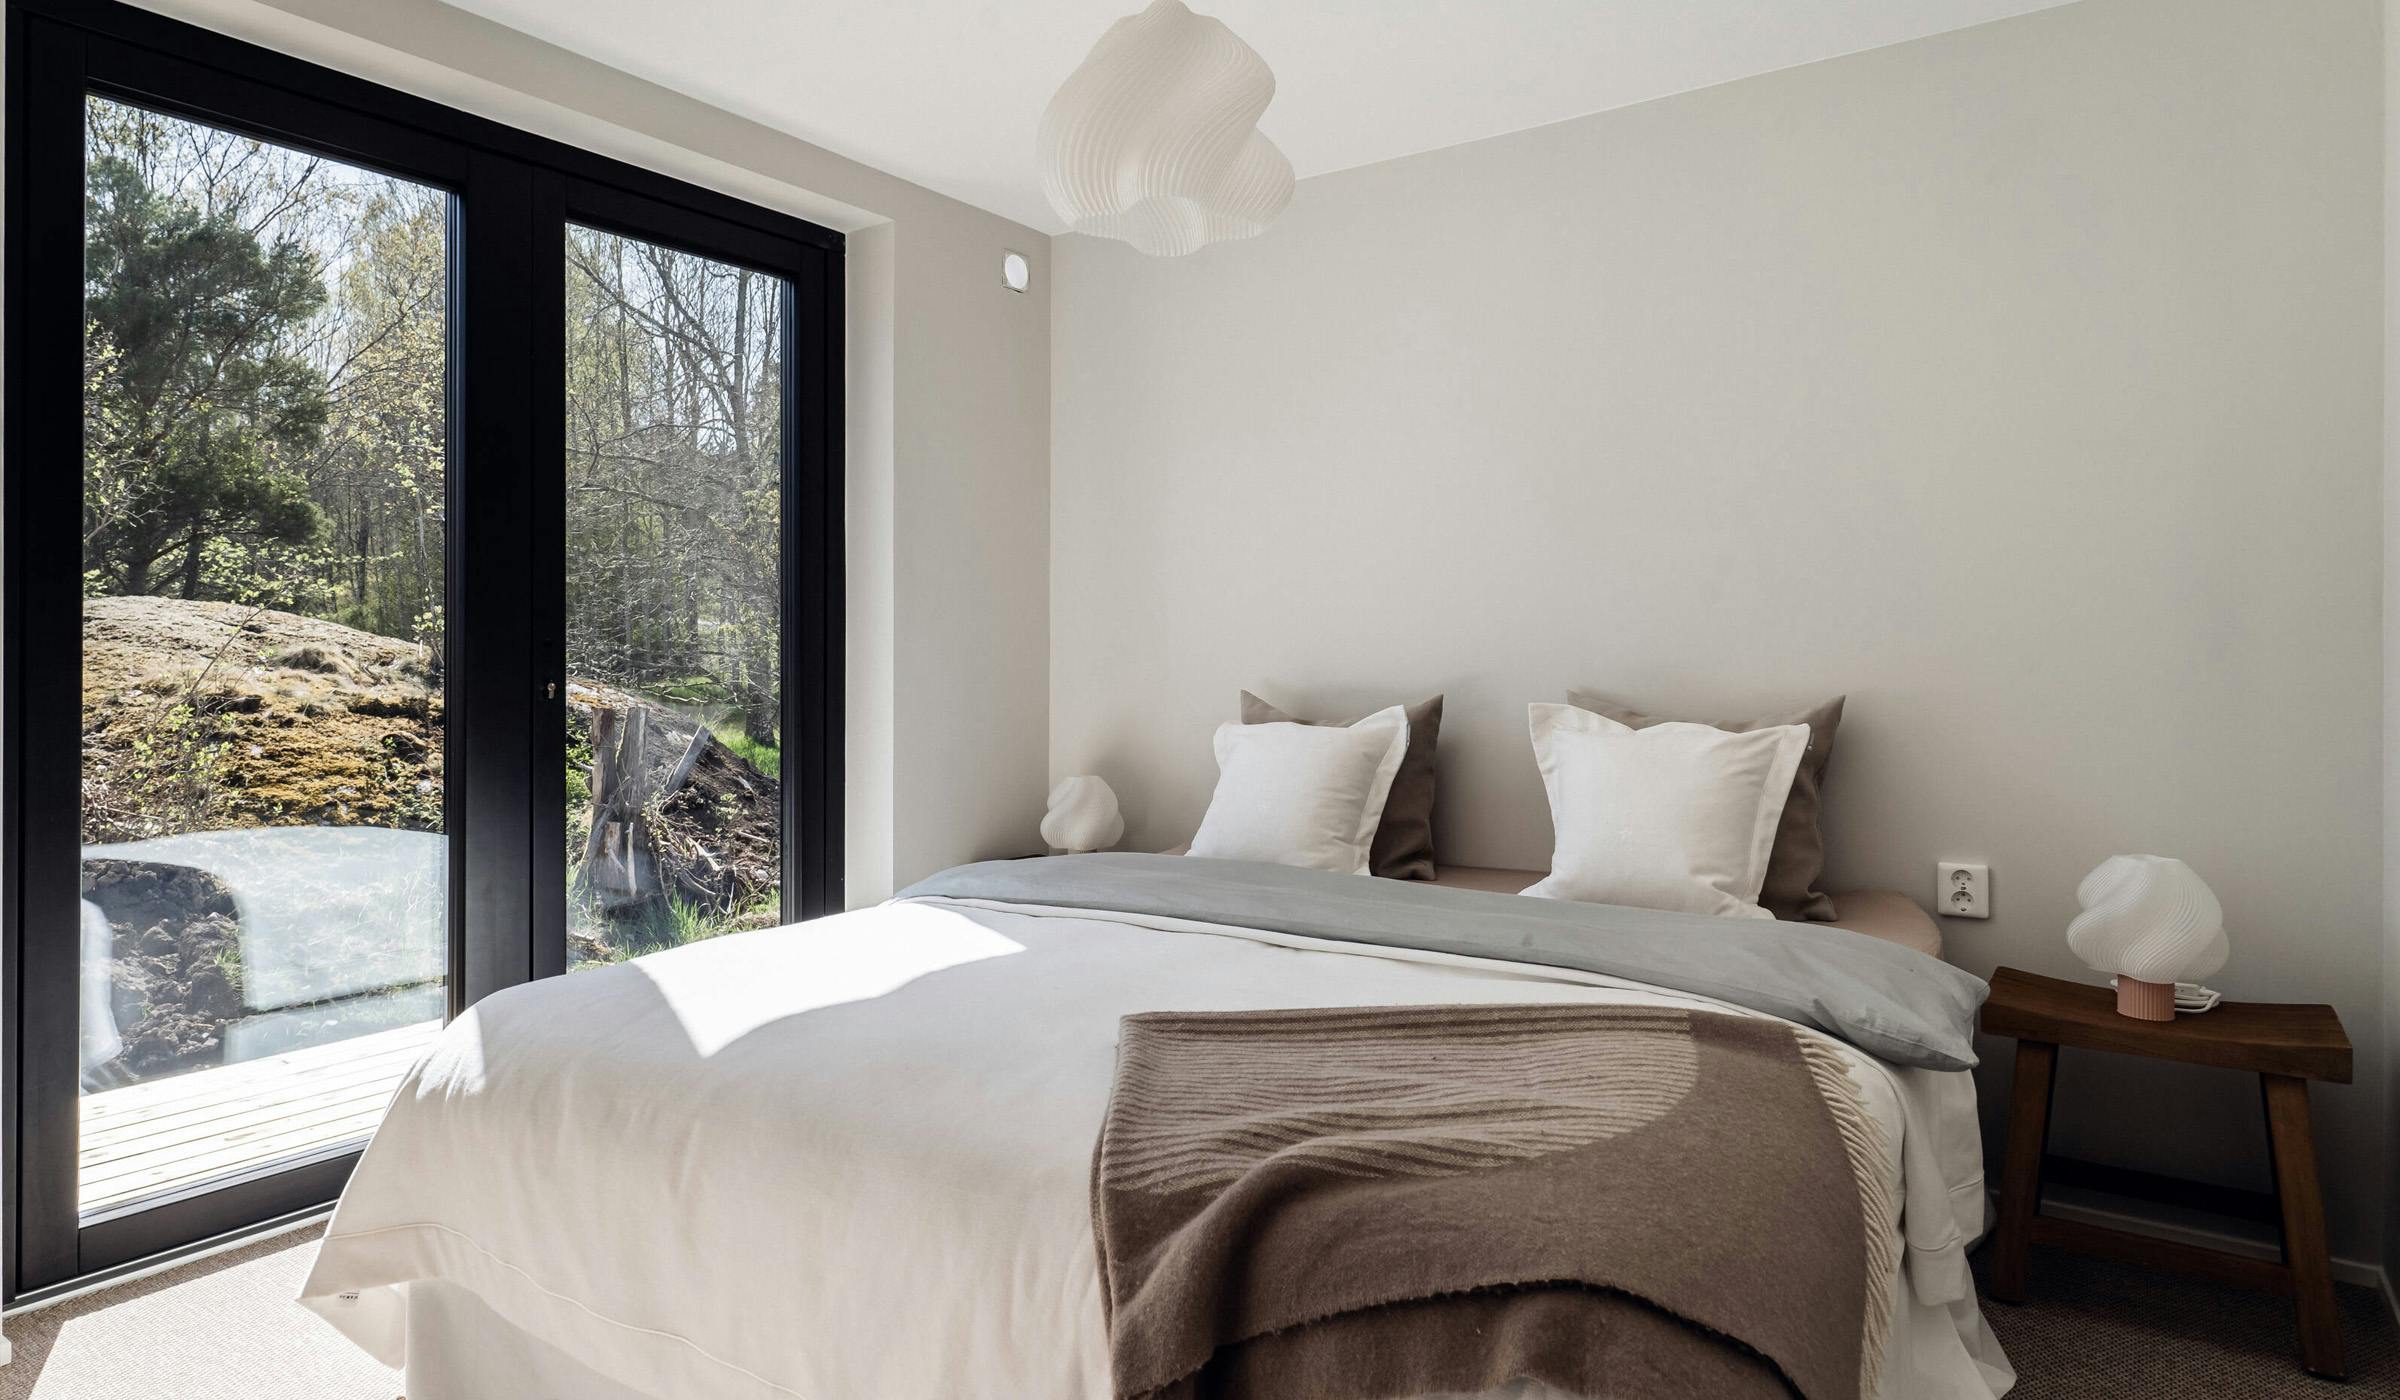 Spacious minimalist bedroom